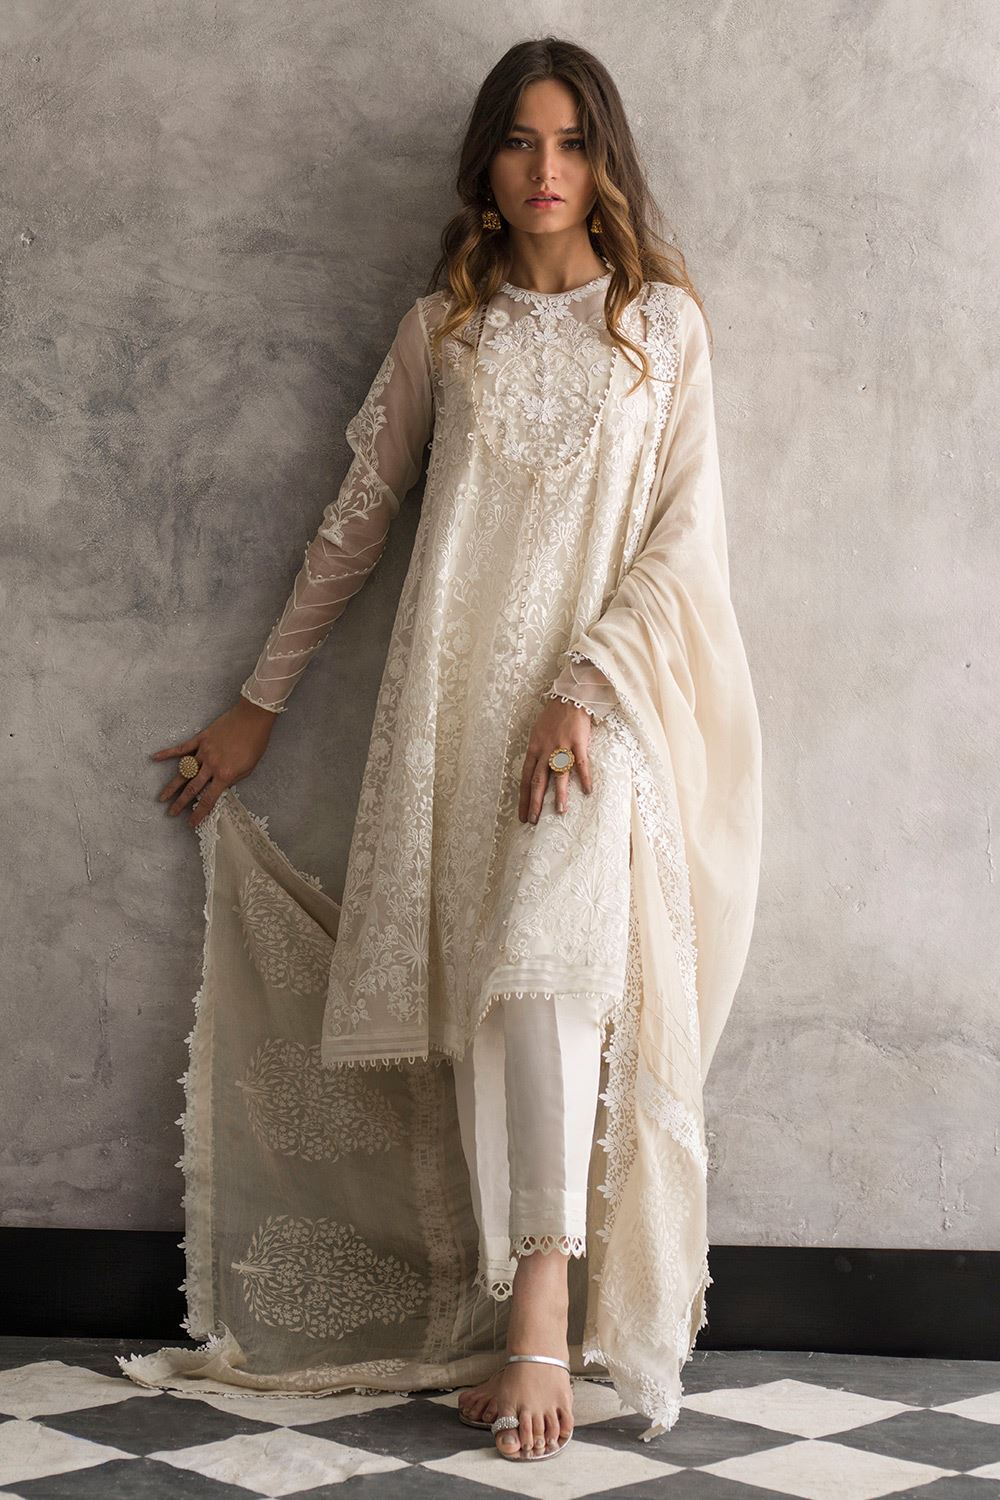 White Embroidered Dress Pakistani